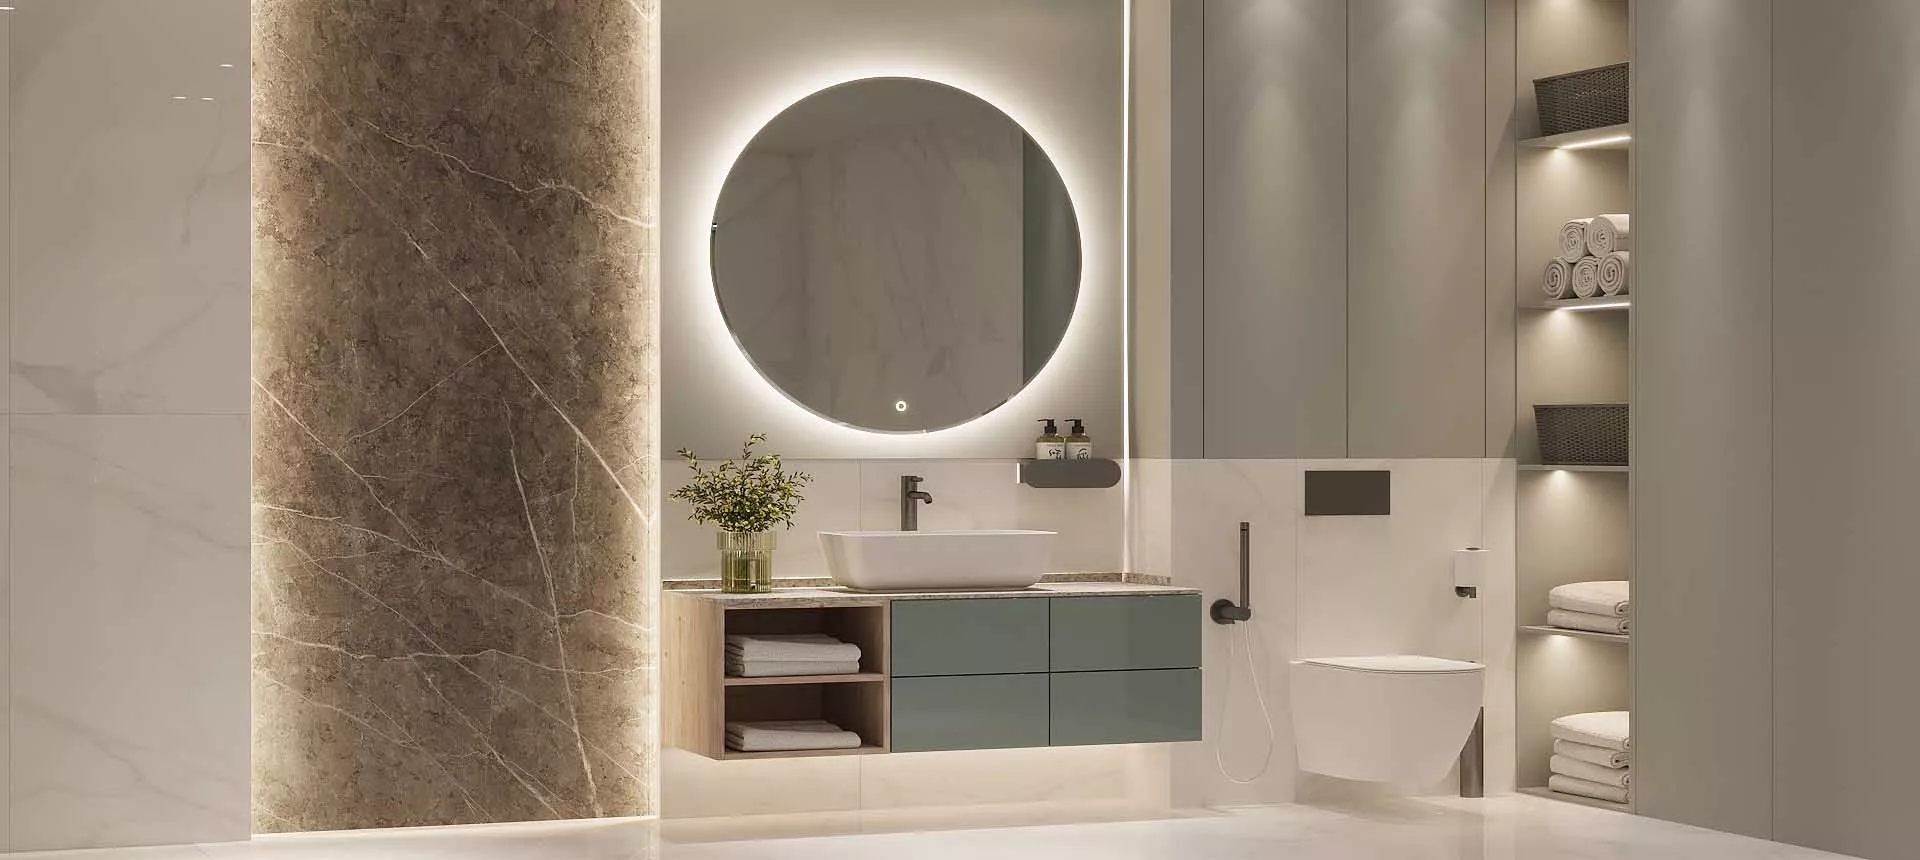 Ванная комната в стиле минимализма: идеи для ремонта с акцентом на функциональности